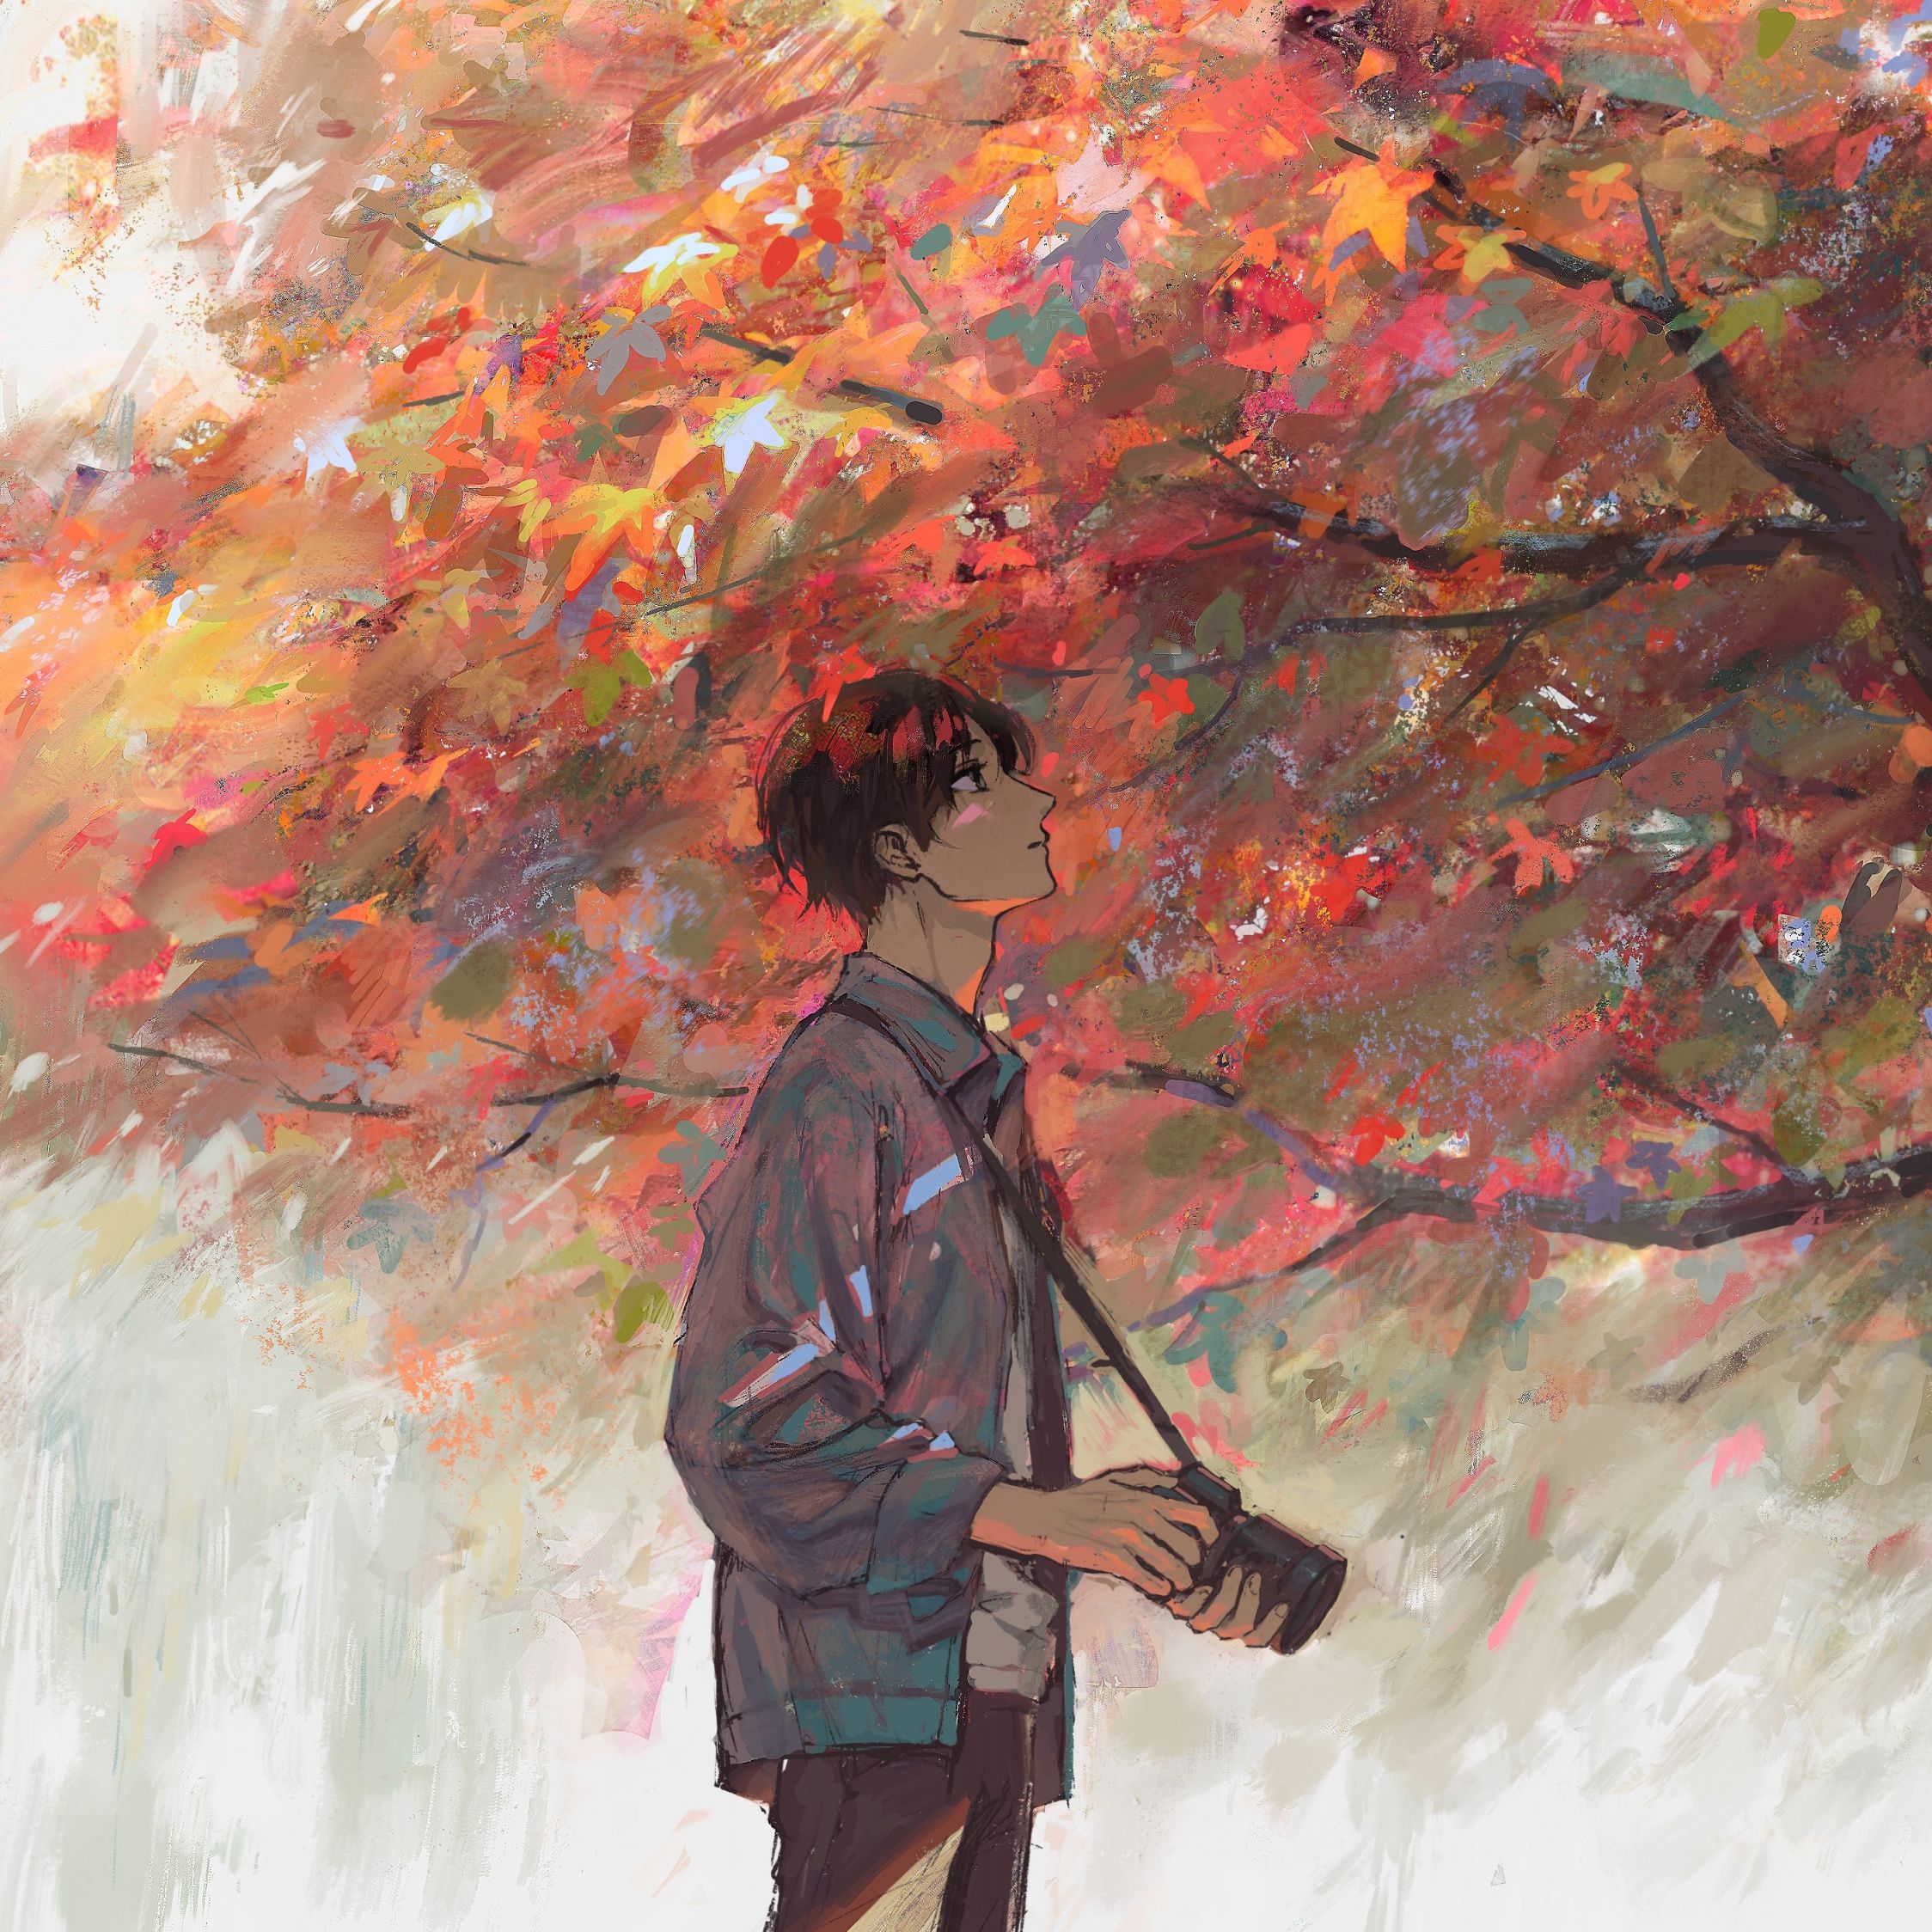 Download Anime boy, autumn, tree, artwork wallpaper, 2248x iPad Air, iPad Air iPad iPad iPad mini iPad mini 3